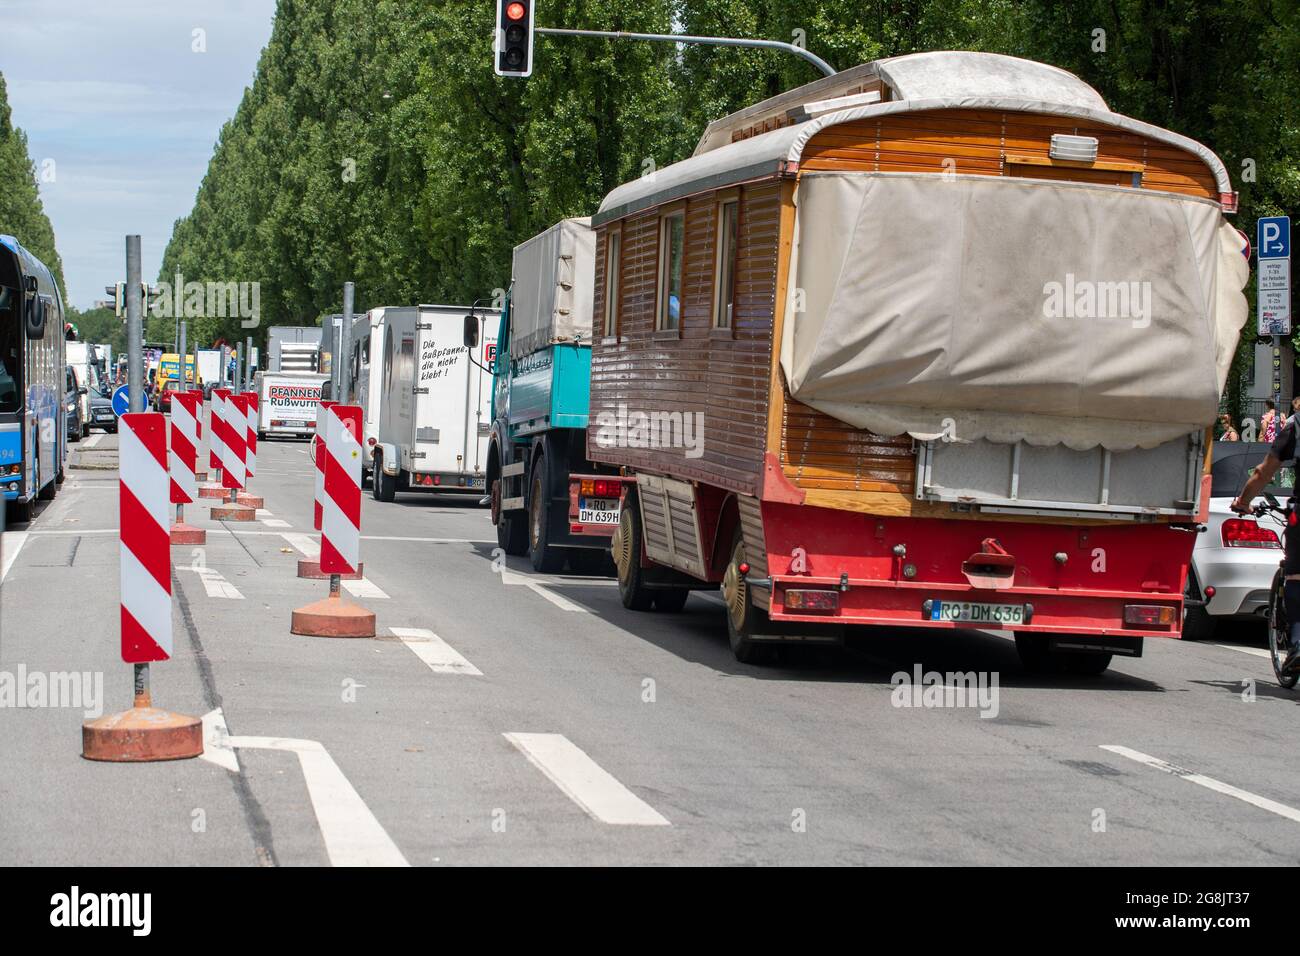 Schausteller haben am 9. Juli 2020 die Leopold und Ludwigstraße in München  blockiert, um auf ihre Situation aufmerksam zu machen. Da Volksfeste und  Dulten für dieses Jahr wegen der Covid-19 Pandemie nicht